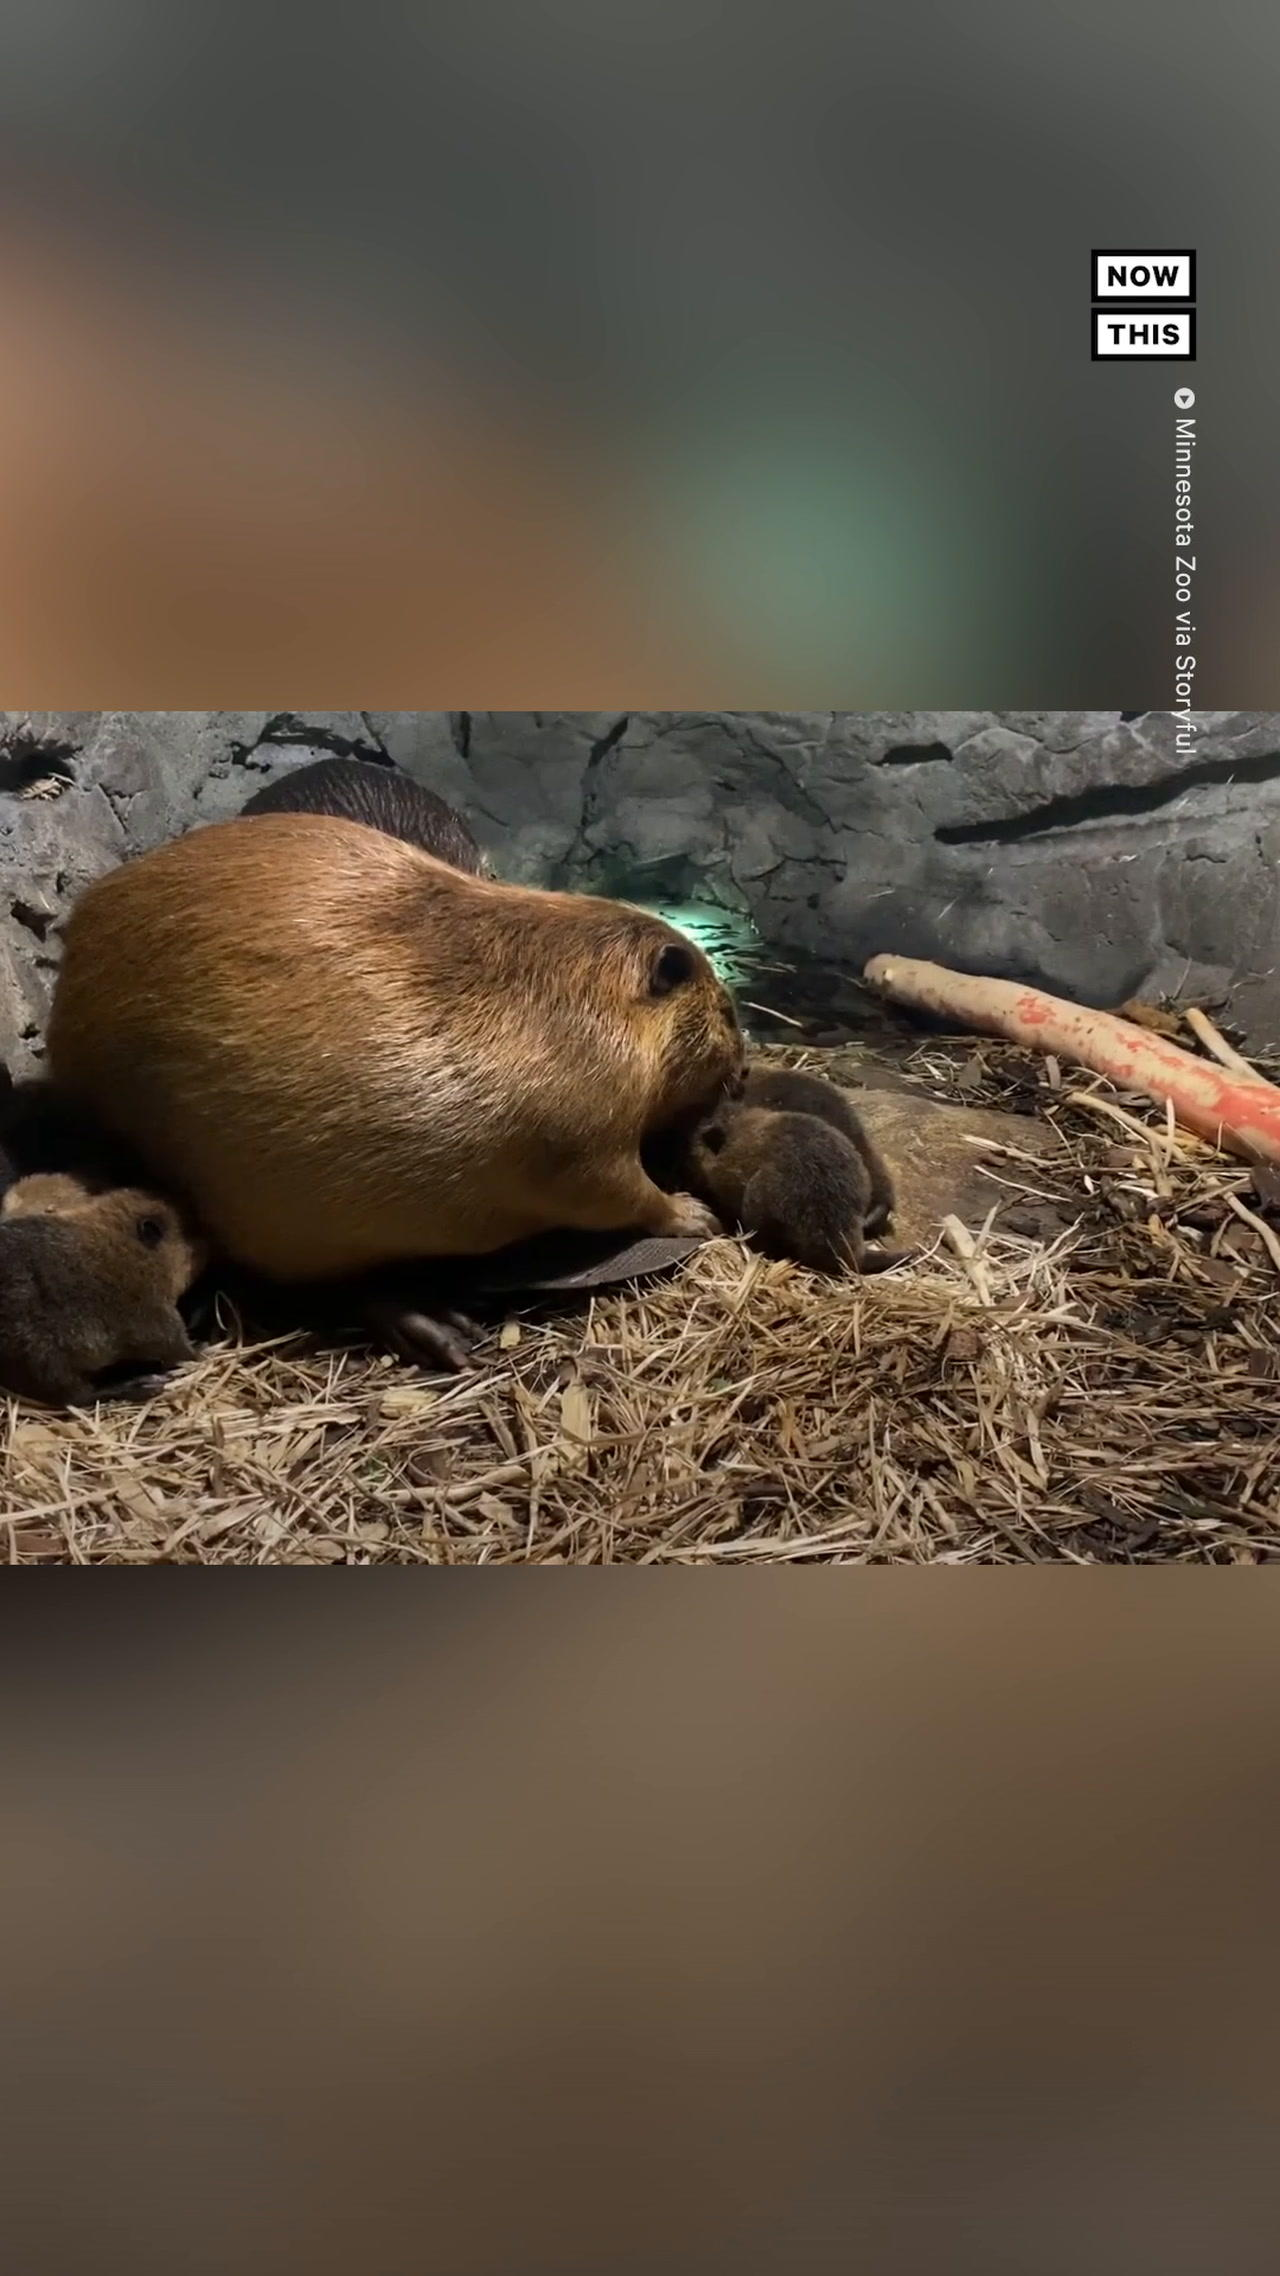 Minnesota Zoo Welcomes Six Baby Beavers